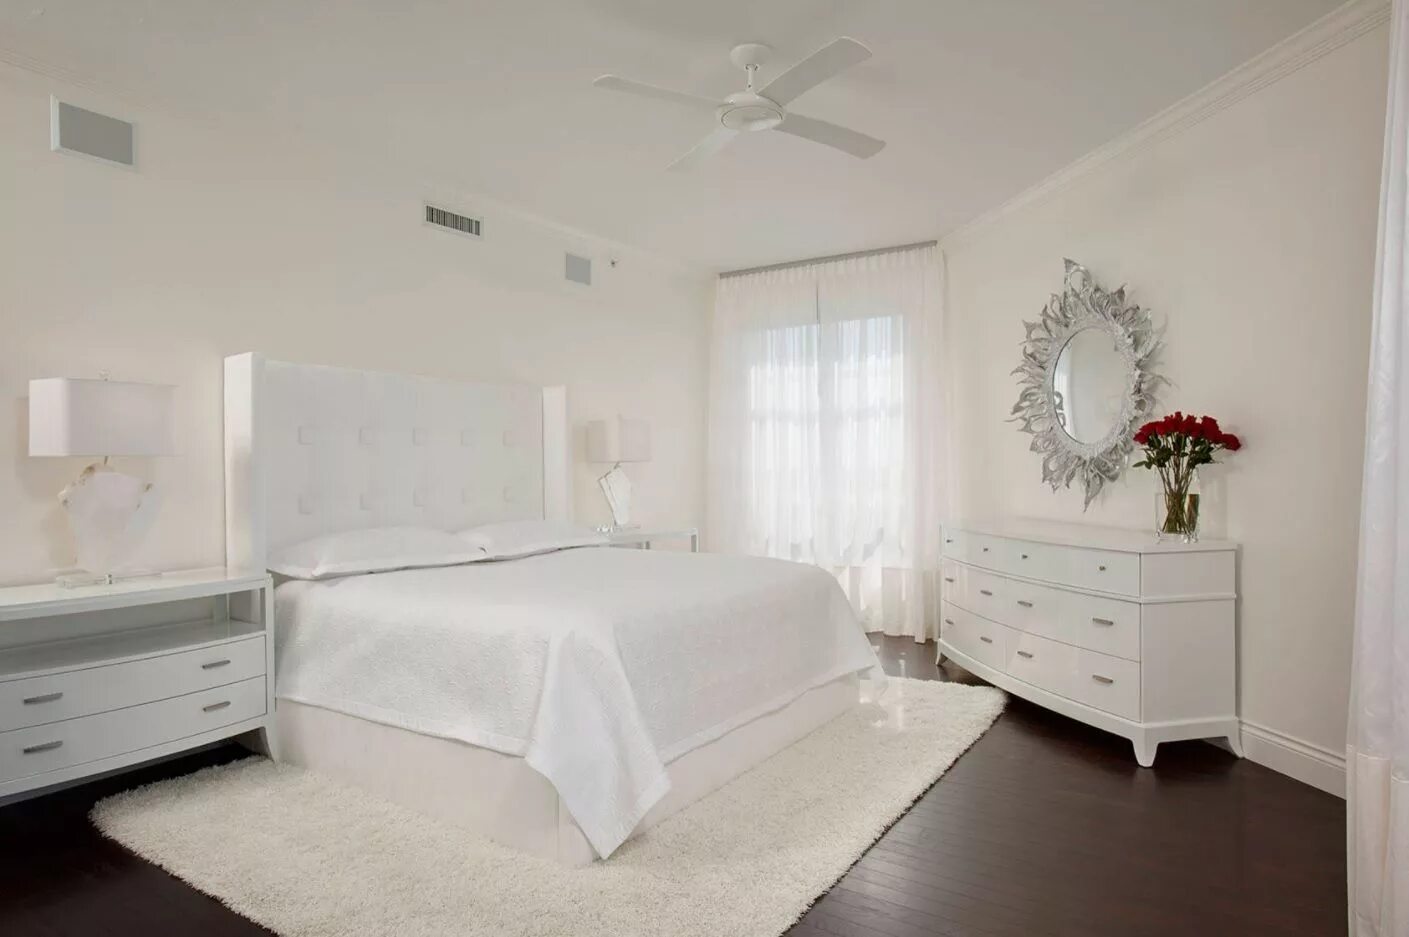 Біла з. Белая спальня. Спальня с белой мебелью. Спальня с бедой мебель. Белый цвет в интерьере.